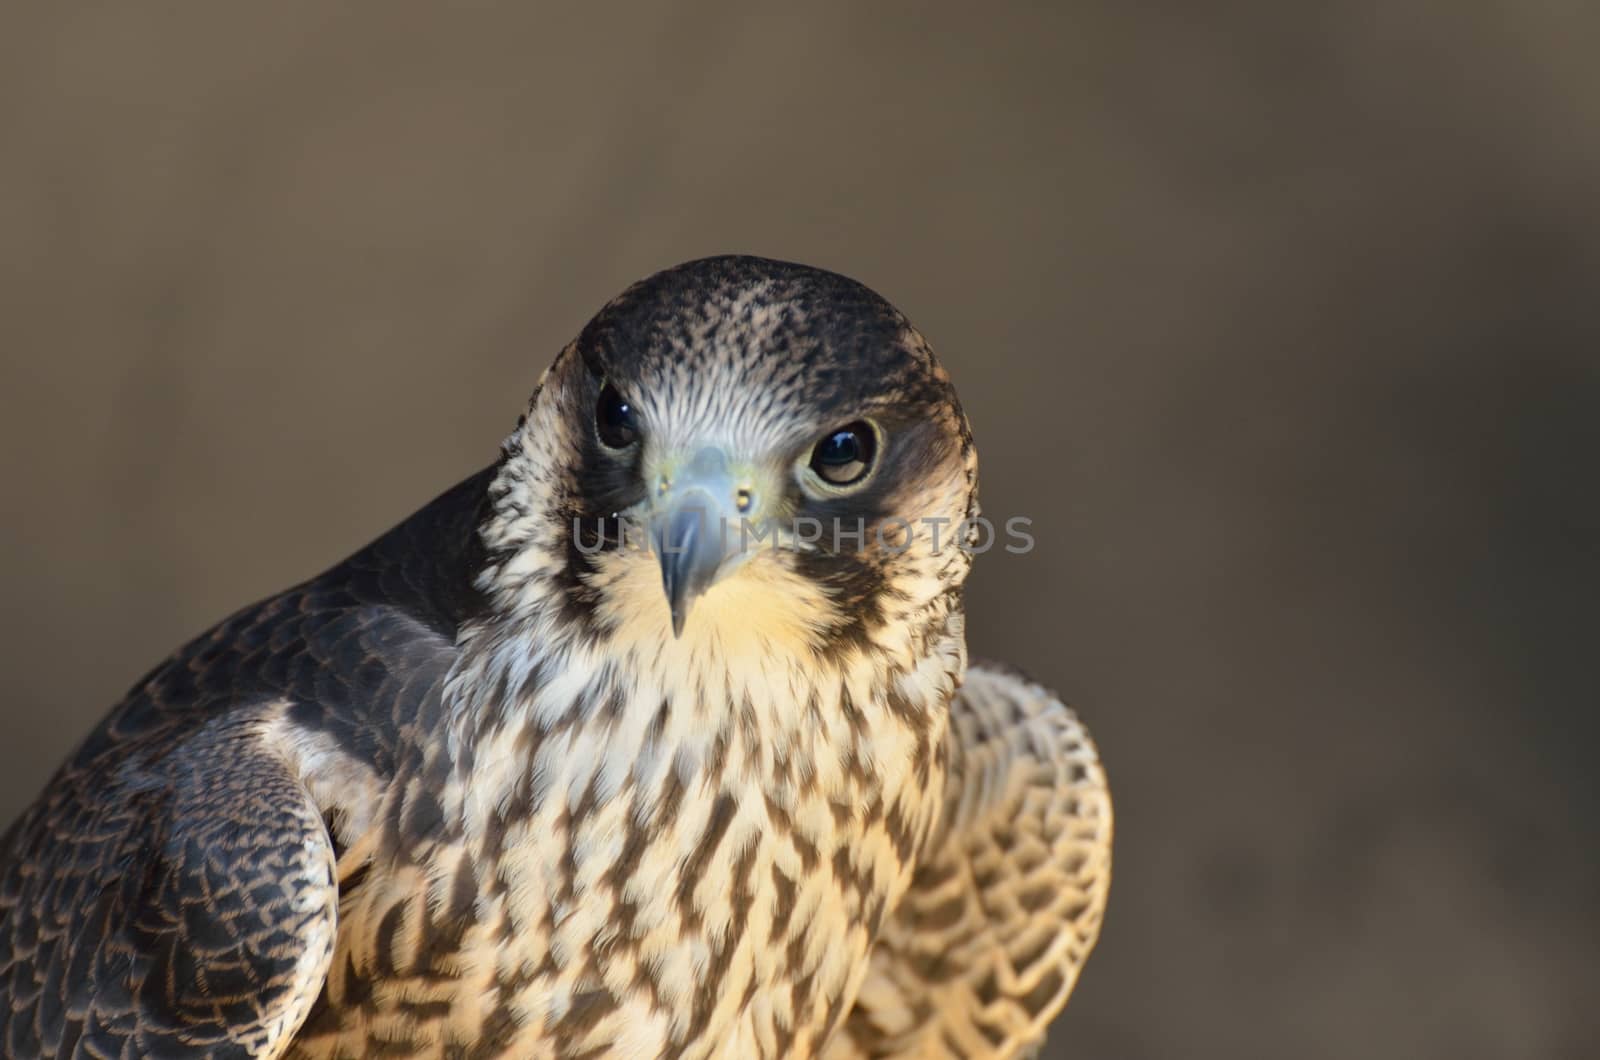 Peregrine Falcon in close up